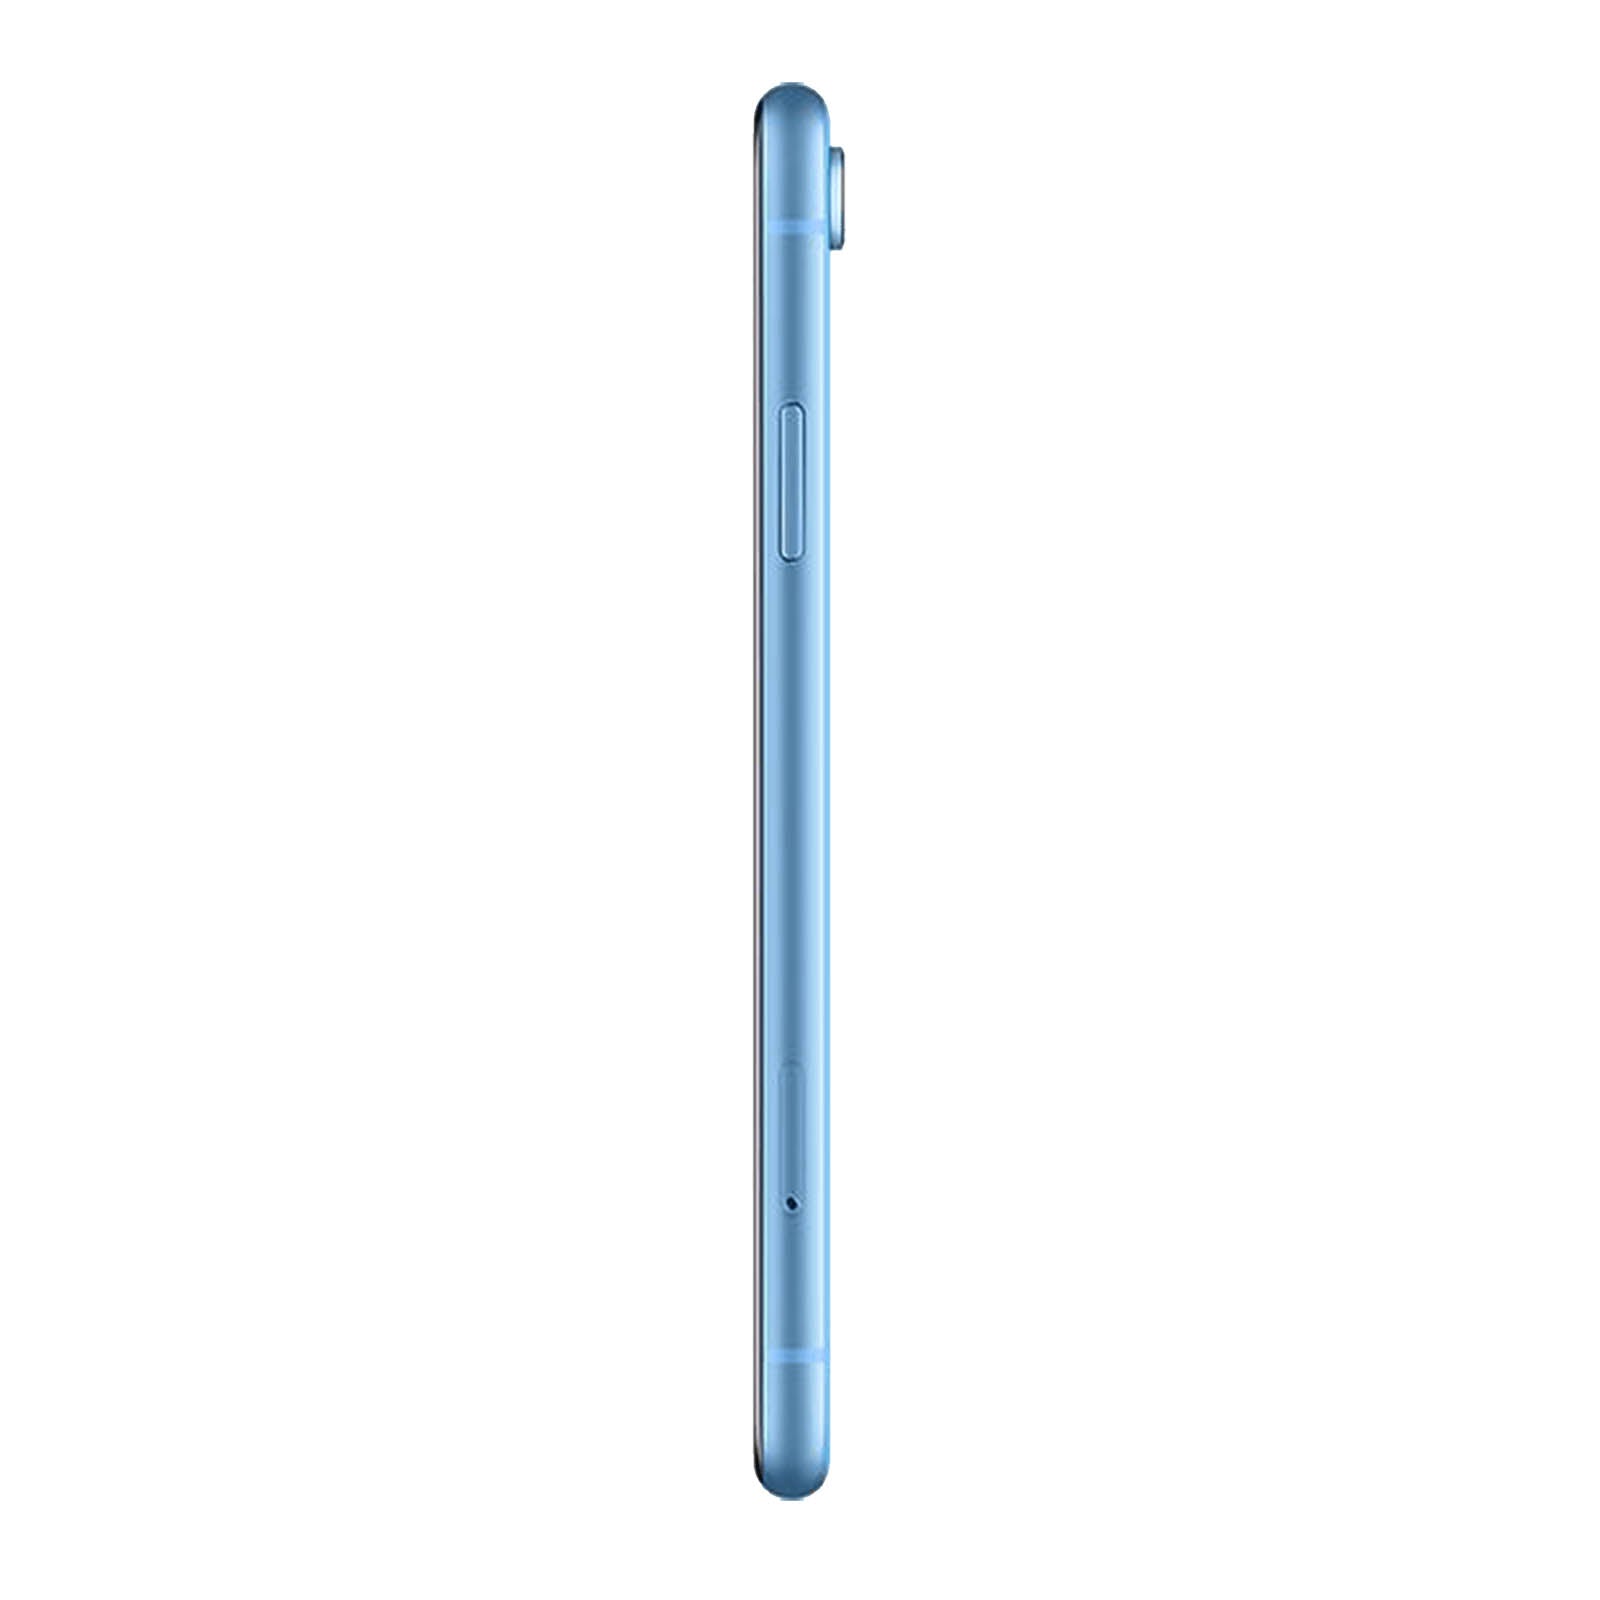 Apple iPhone XR 256GB Blue Fair - AT&T